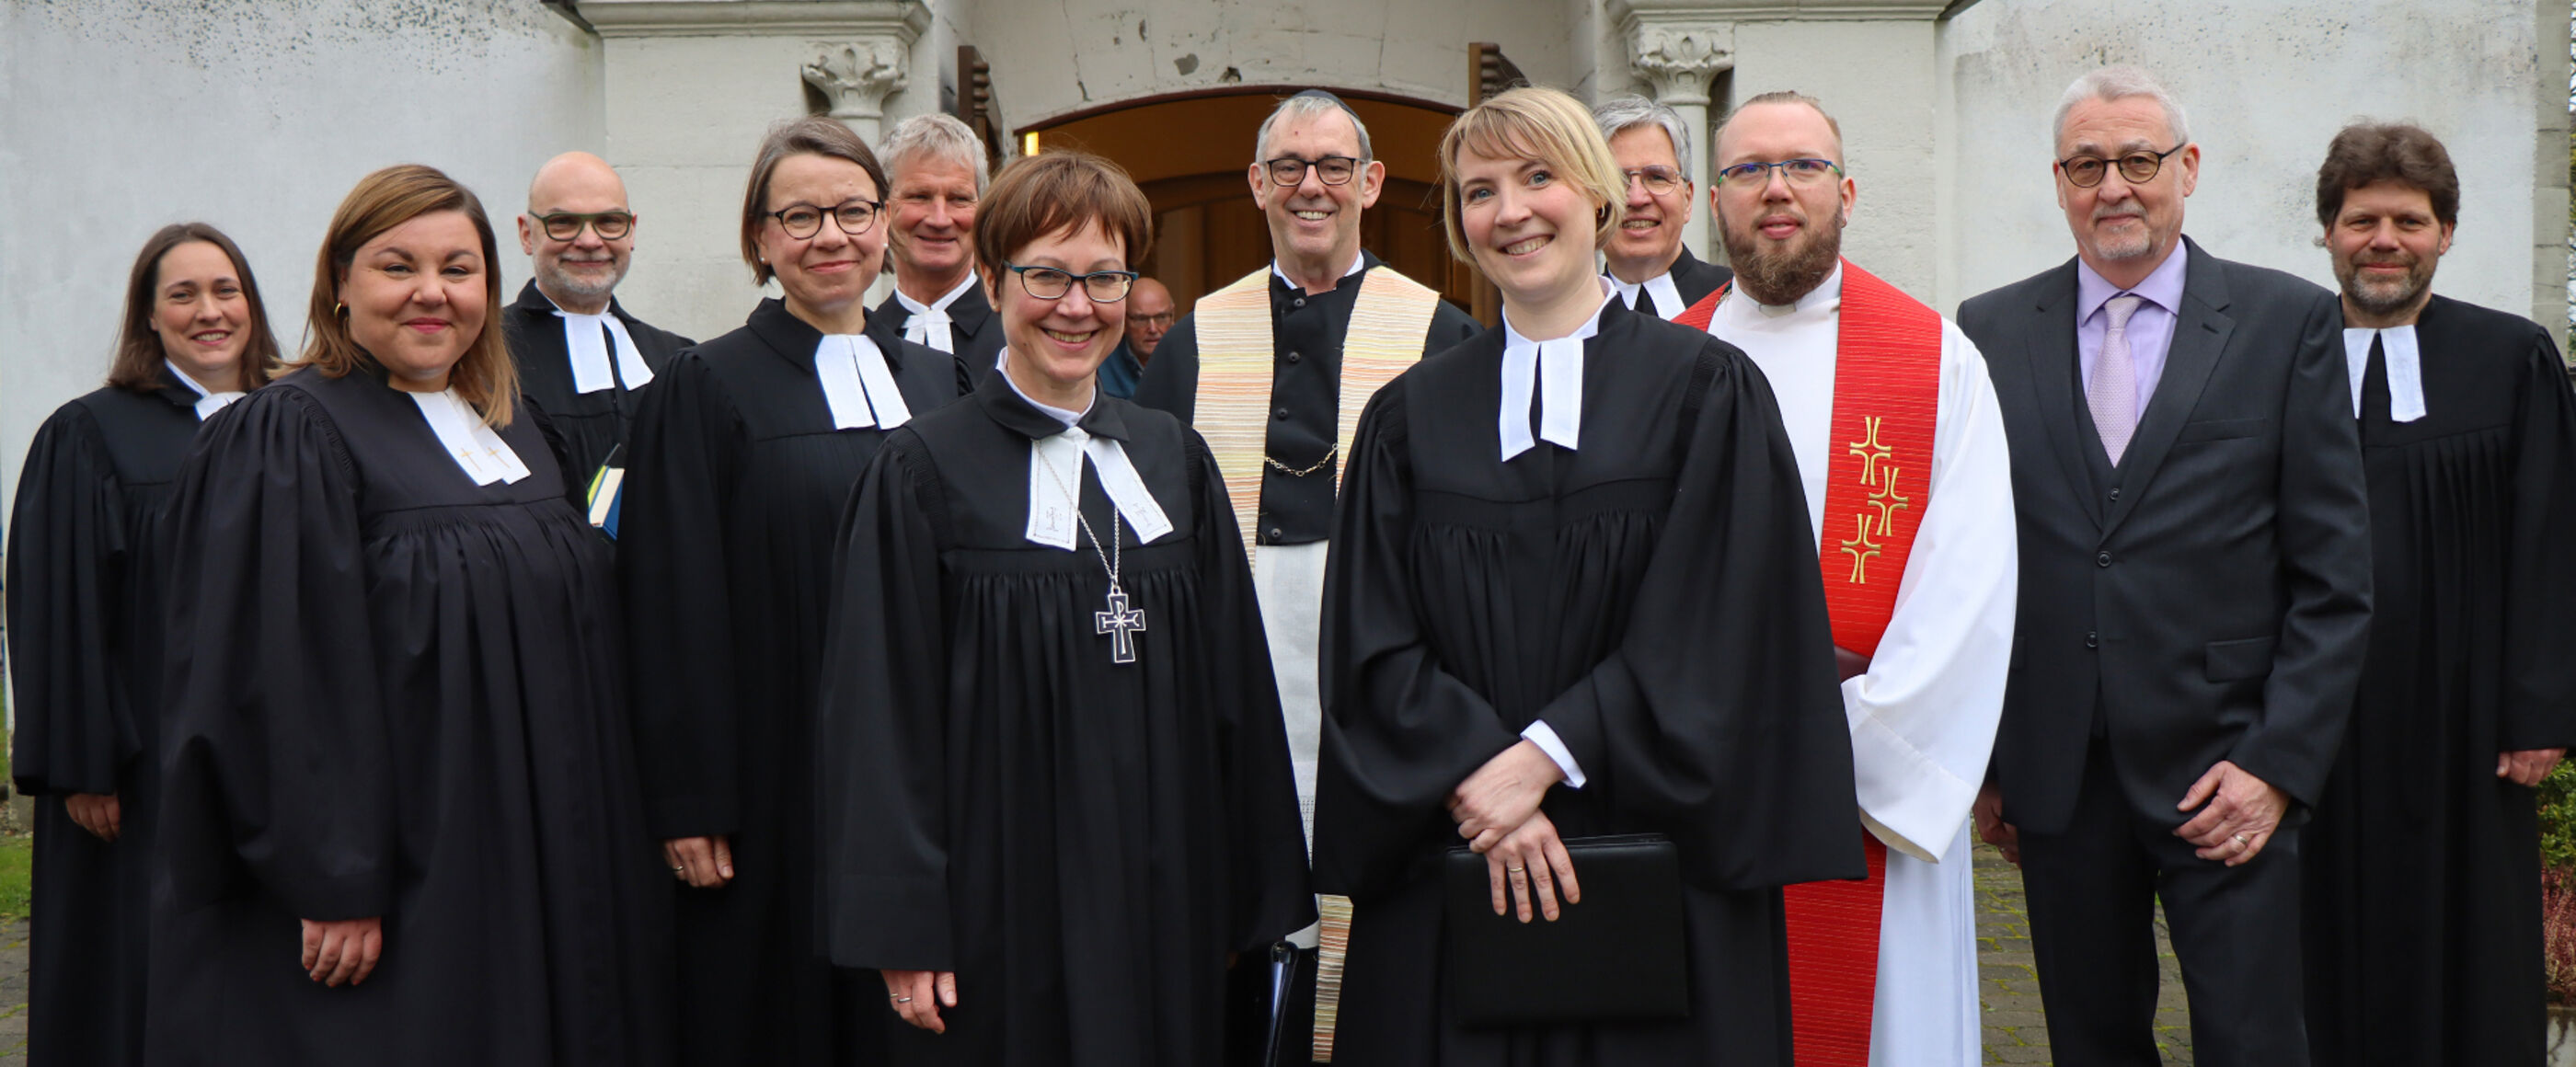 Regionalbischöfin Dr. Adelheid Ruck-Schröder (Mitte mit Kreuz) und rechts daneben Pastorin Jana Jäger mit vielen Mitwirkenden der Ordination.